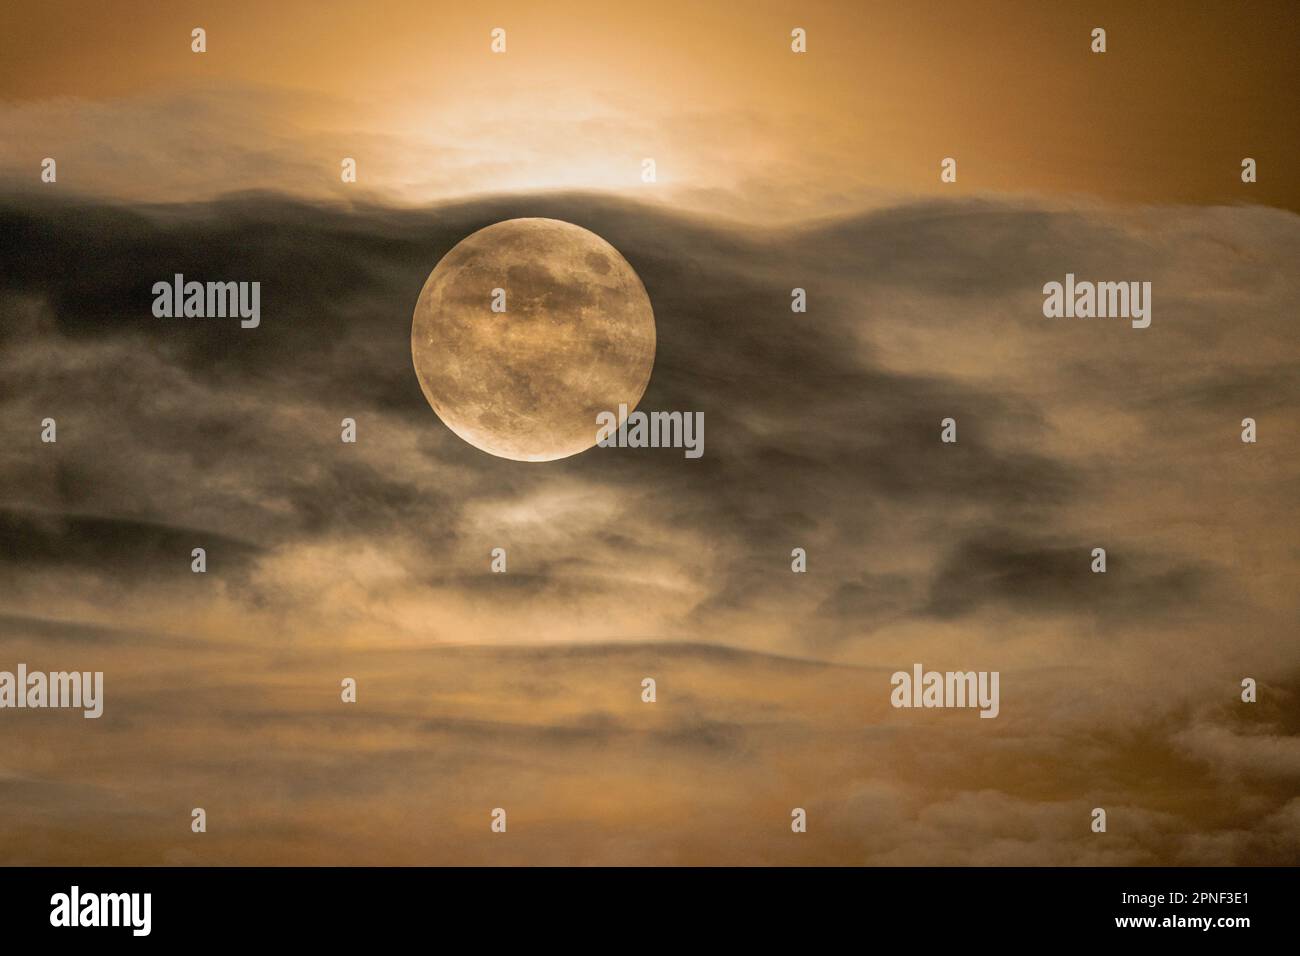 Pleine lune, partiellement couverte par des nuages en mouvement, Allemagne Banque D'Images